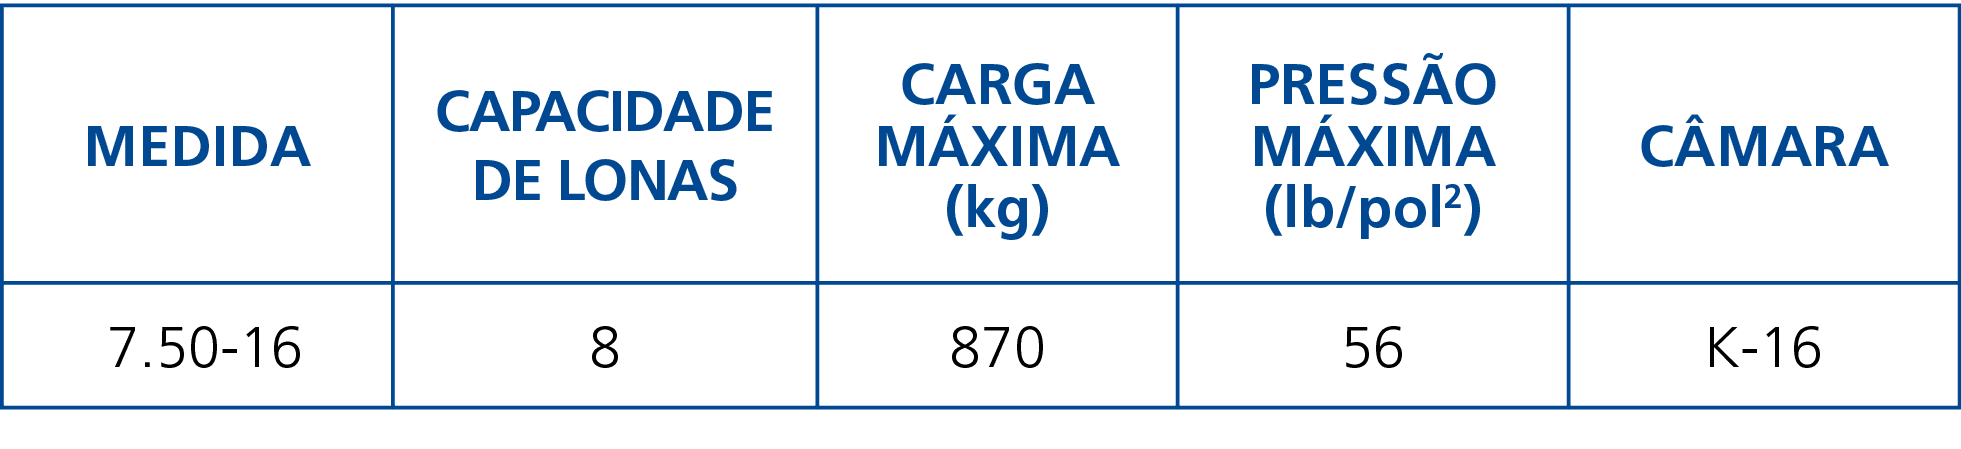 Medida,Capacidade de Lonas,Carga Máxima (kg),Pressão Máxima (lb pol2),Câmara, 7 50-16,8,870,56,K-16